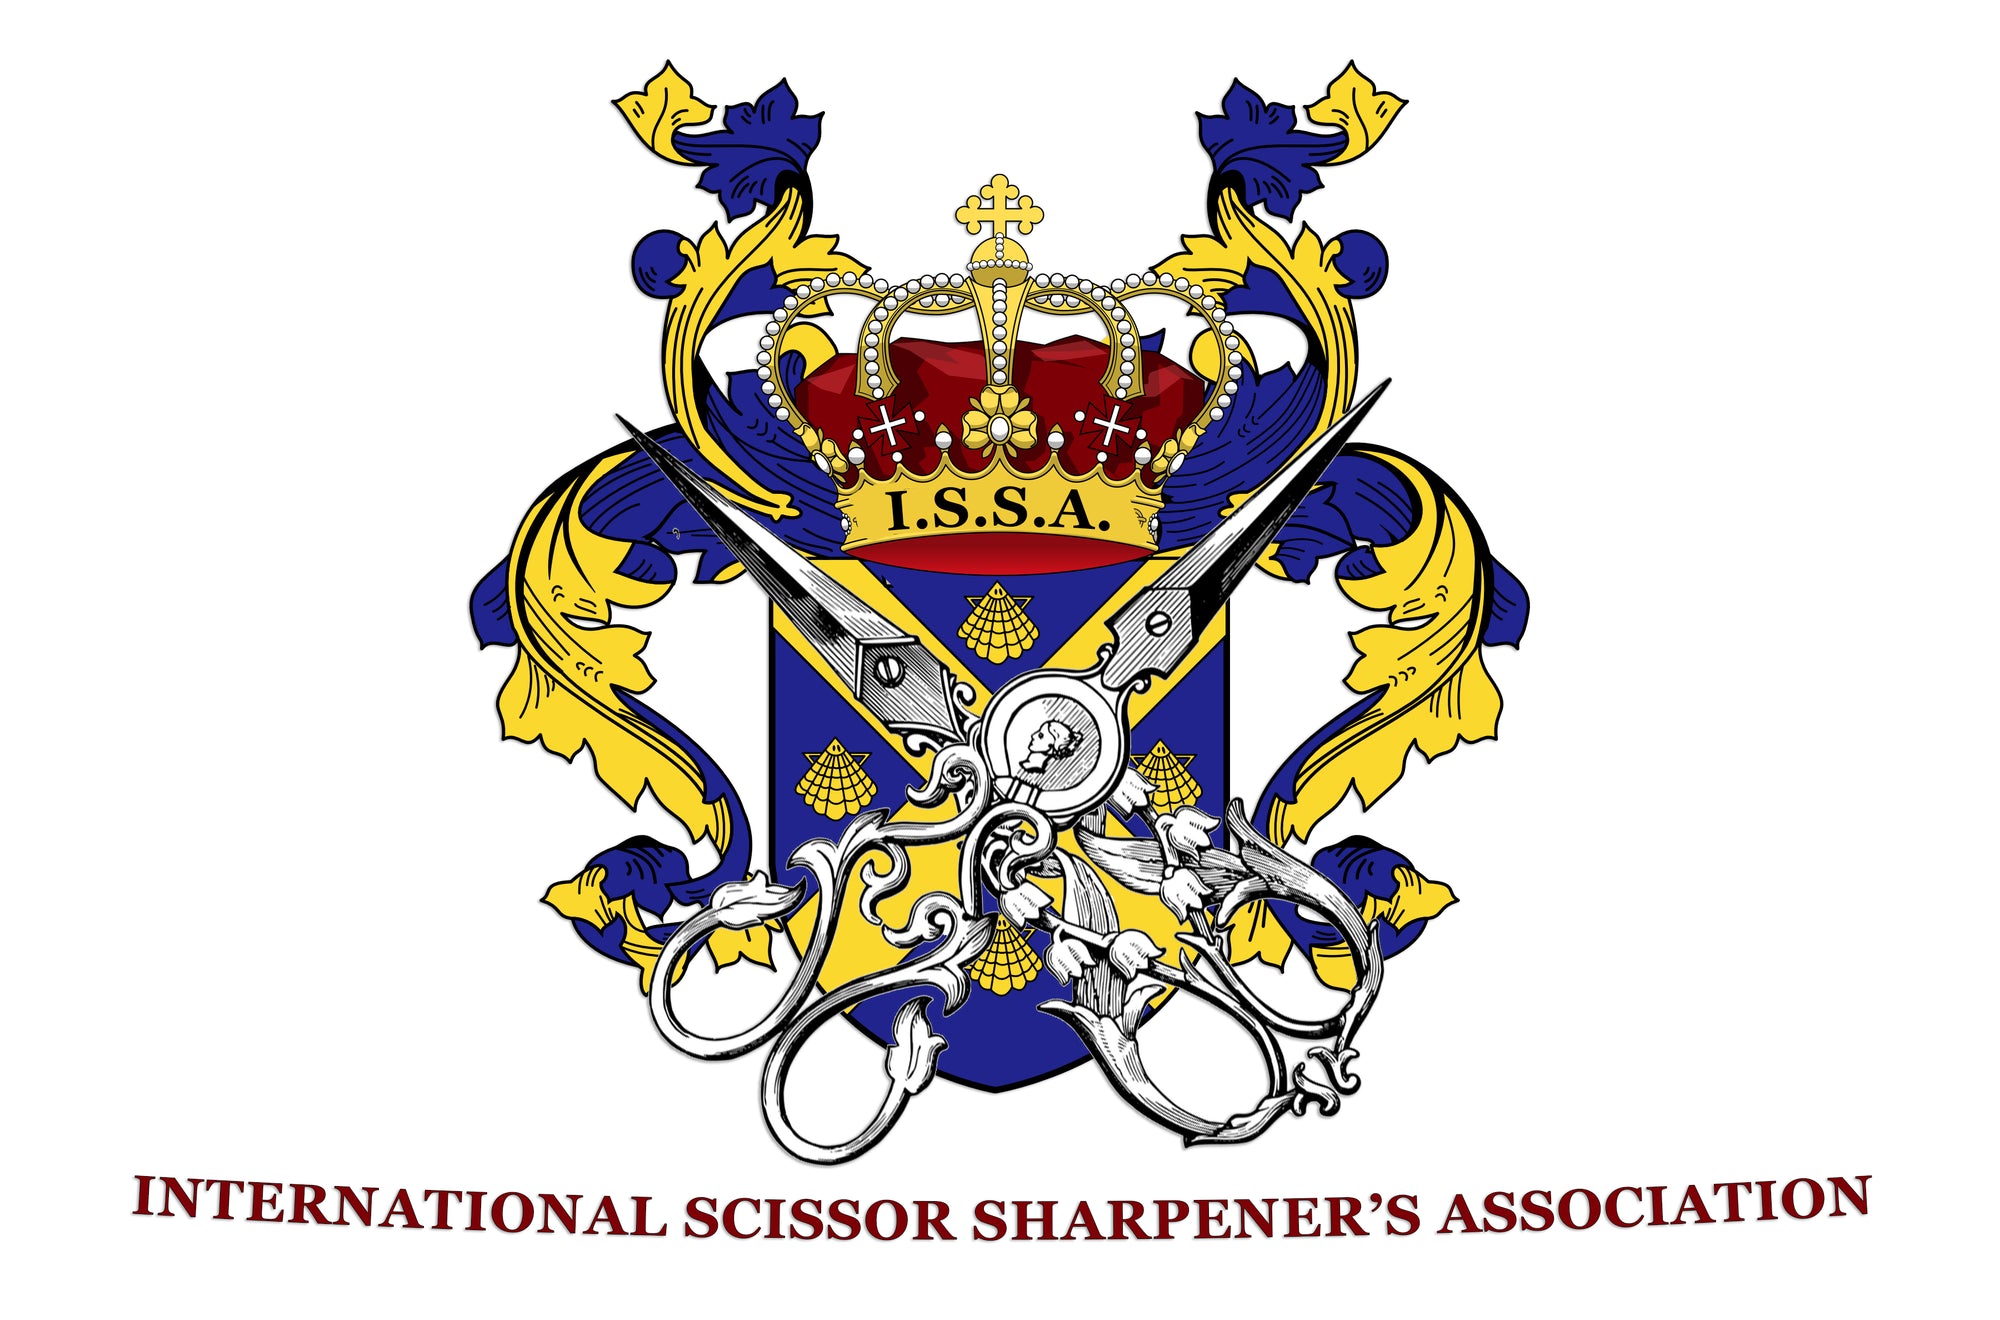 International Scissor Sharpener's Association